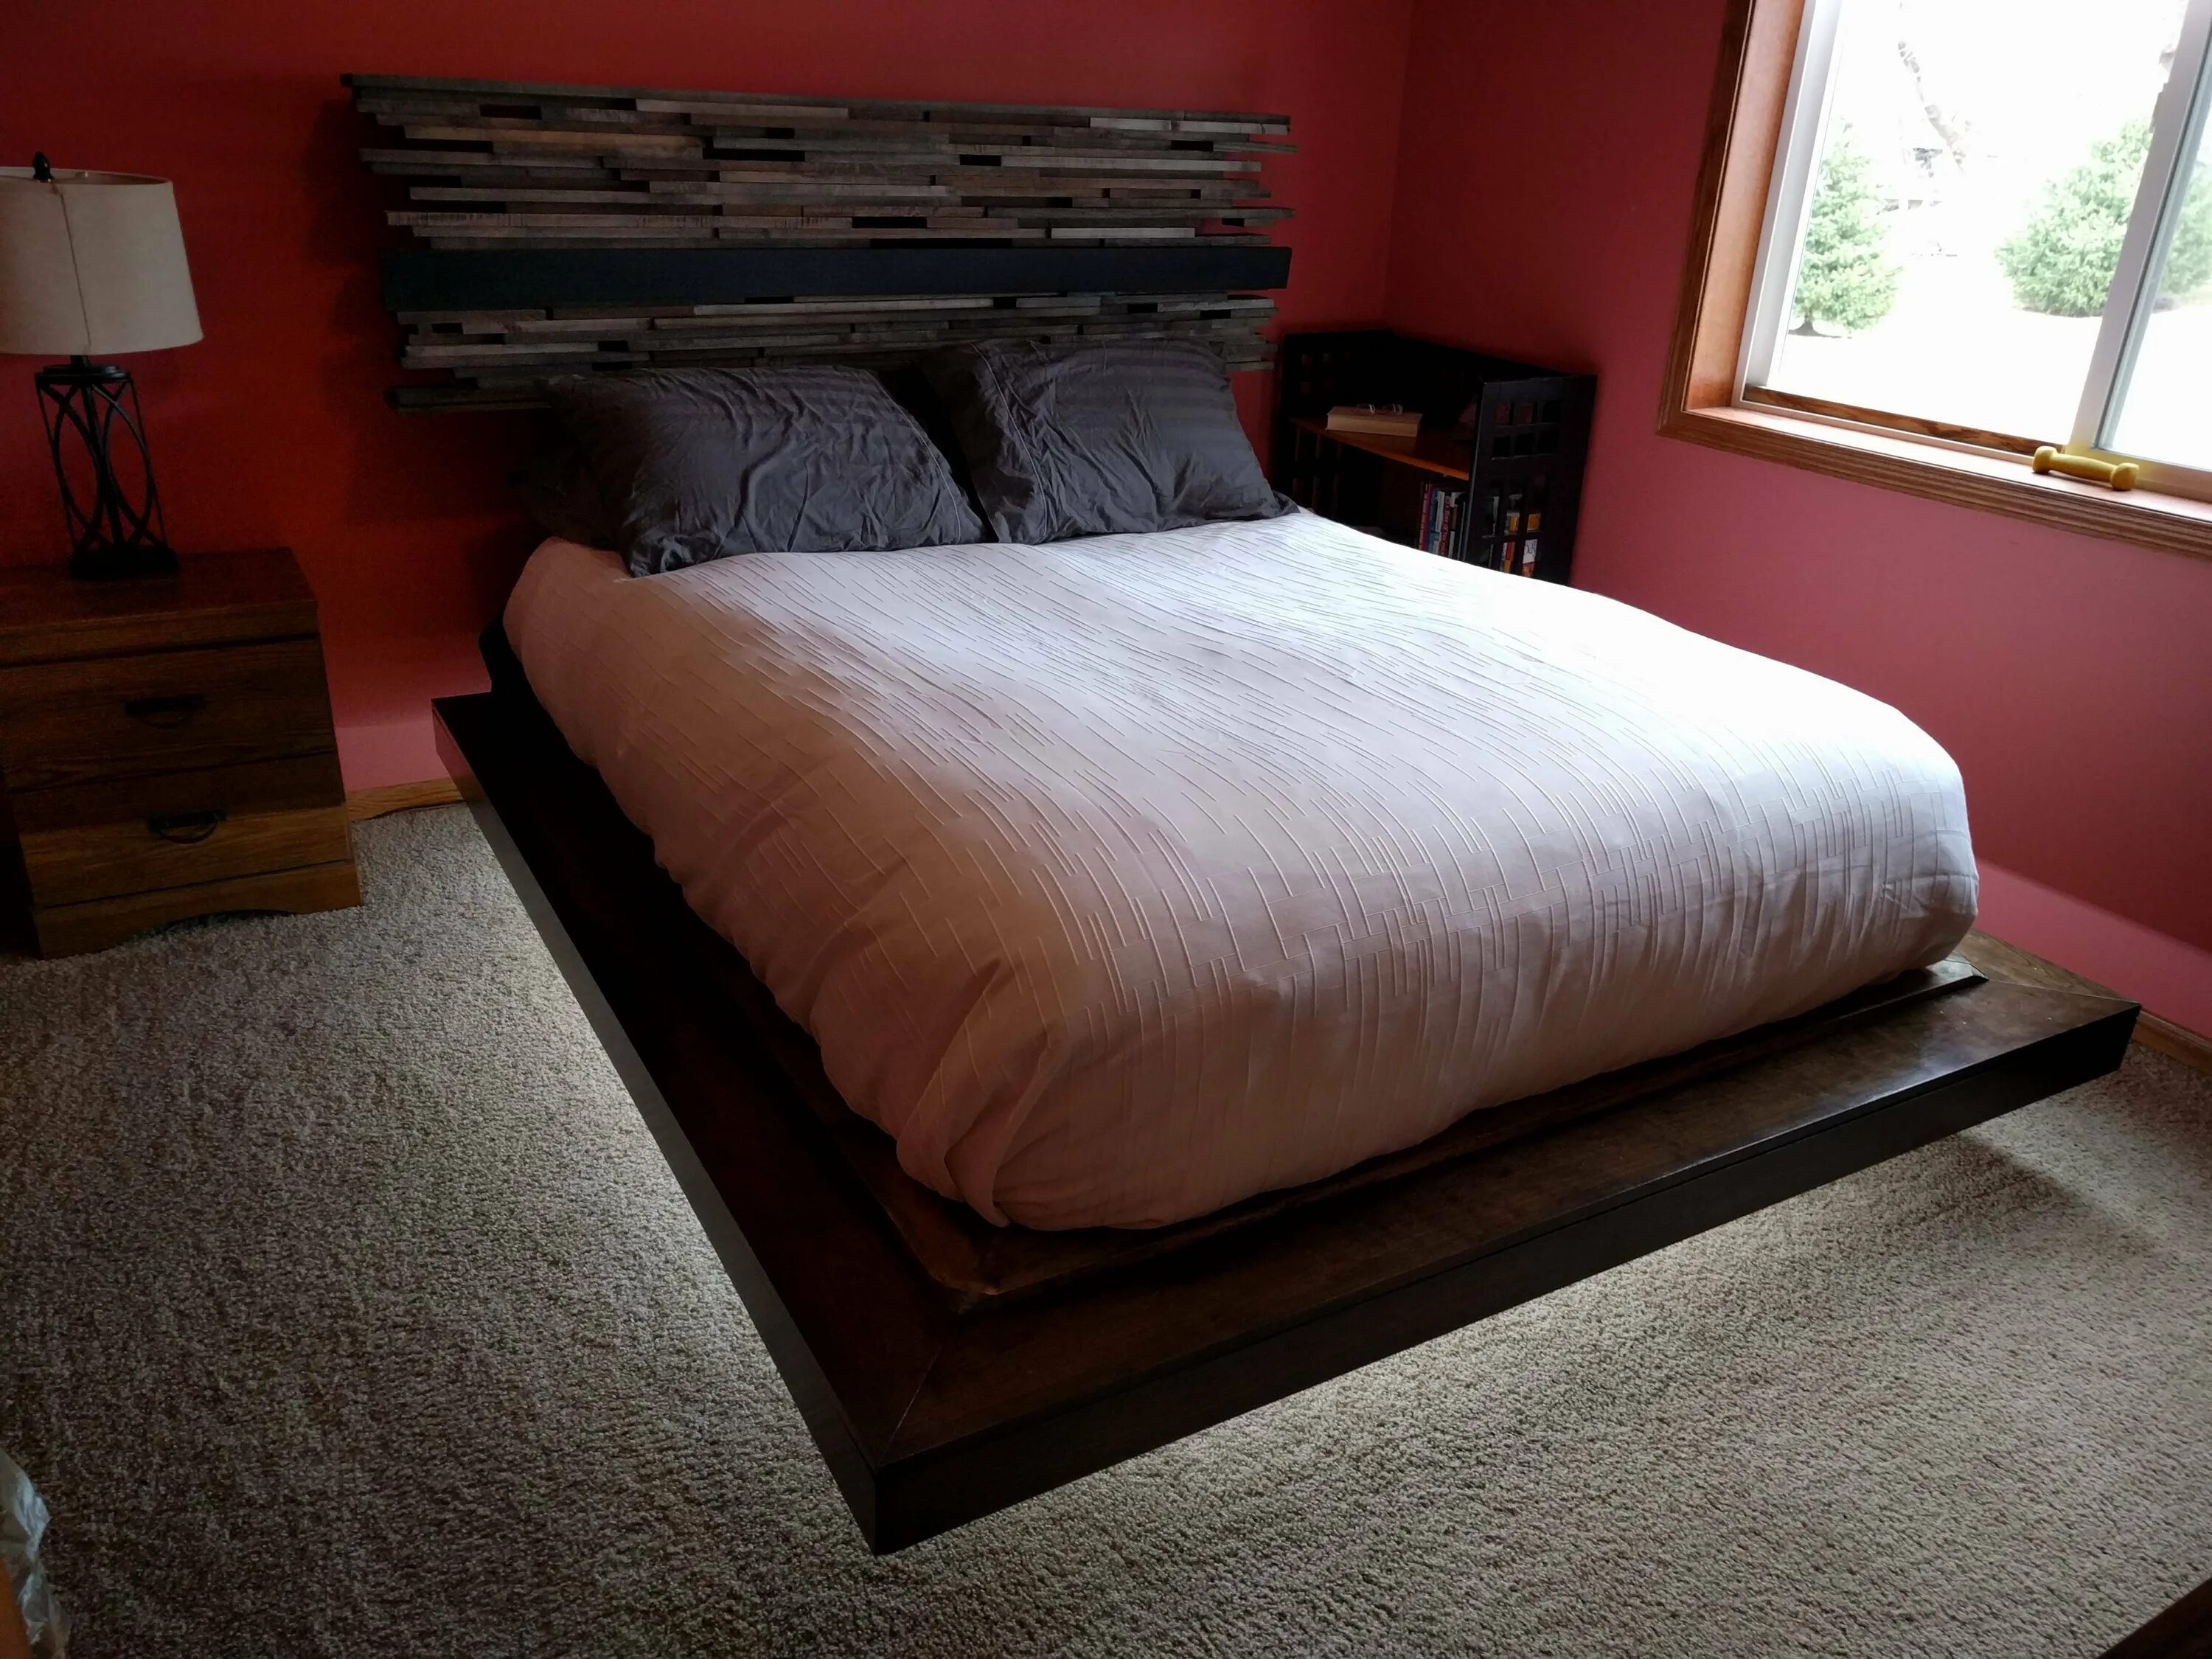 Двуспальная кровать дома дом. Кровать Magnetic Floating Bed. Кровать двуспальная парящая. Летающая кровать. Кровать висящая в воздухе.